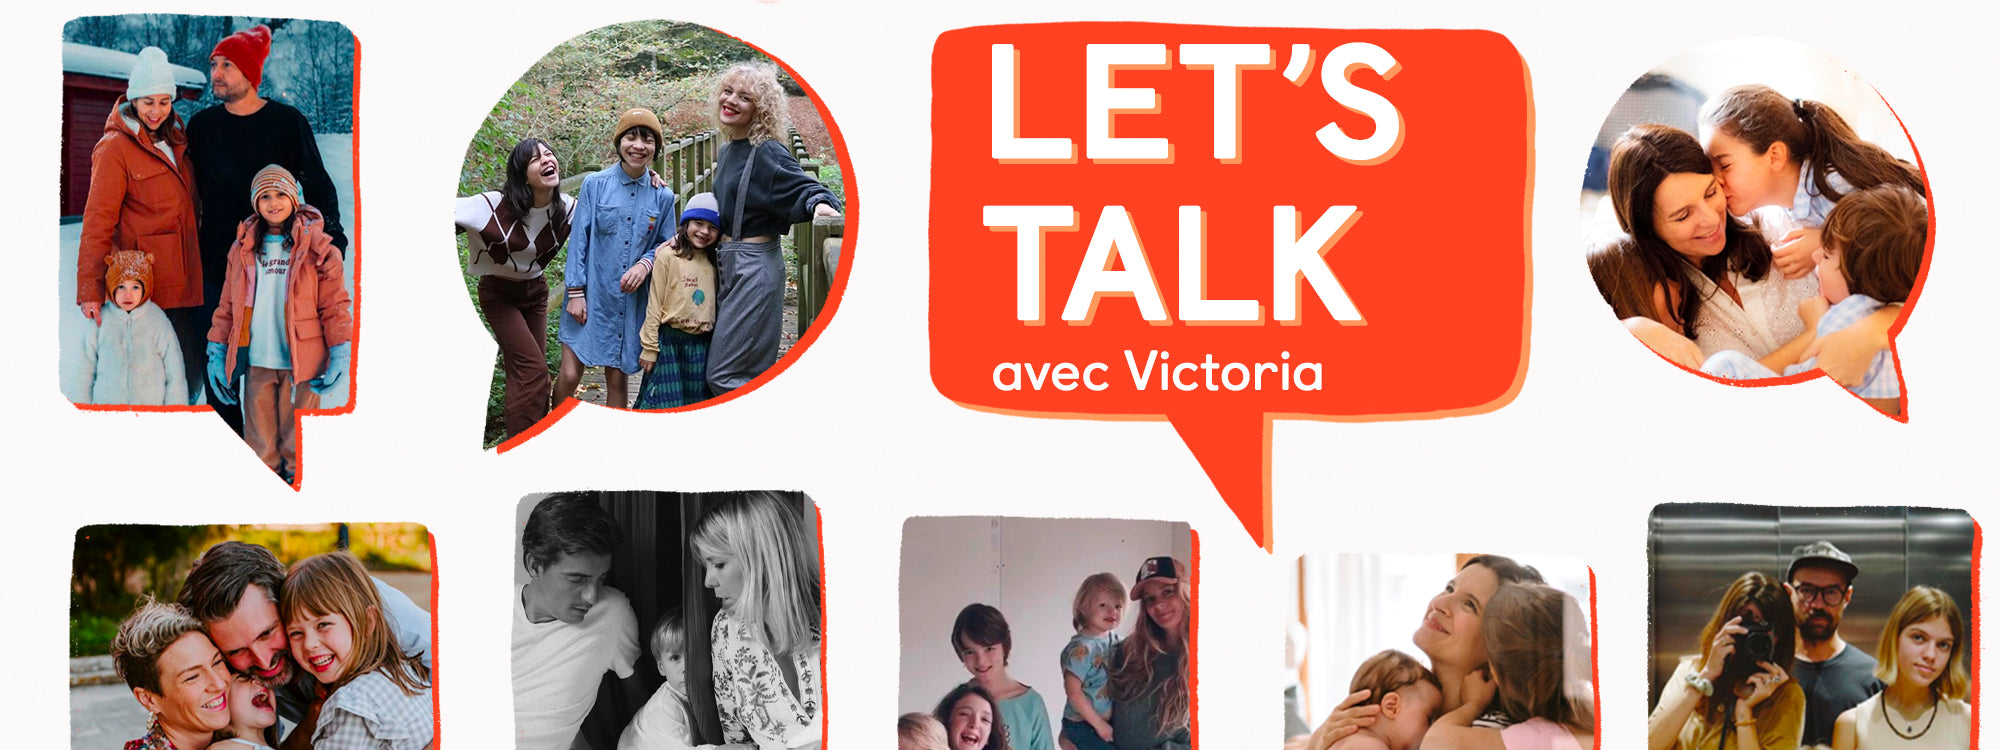 Let's Talk avec Victoria